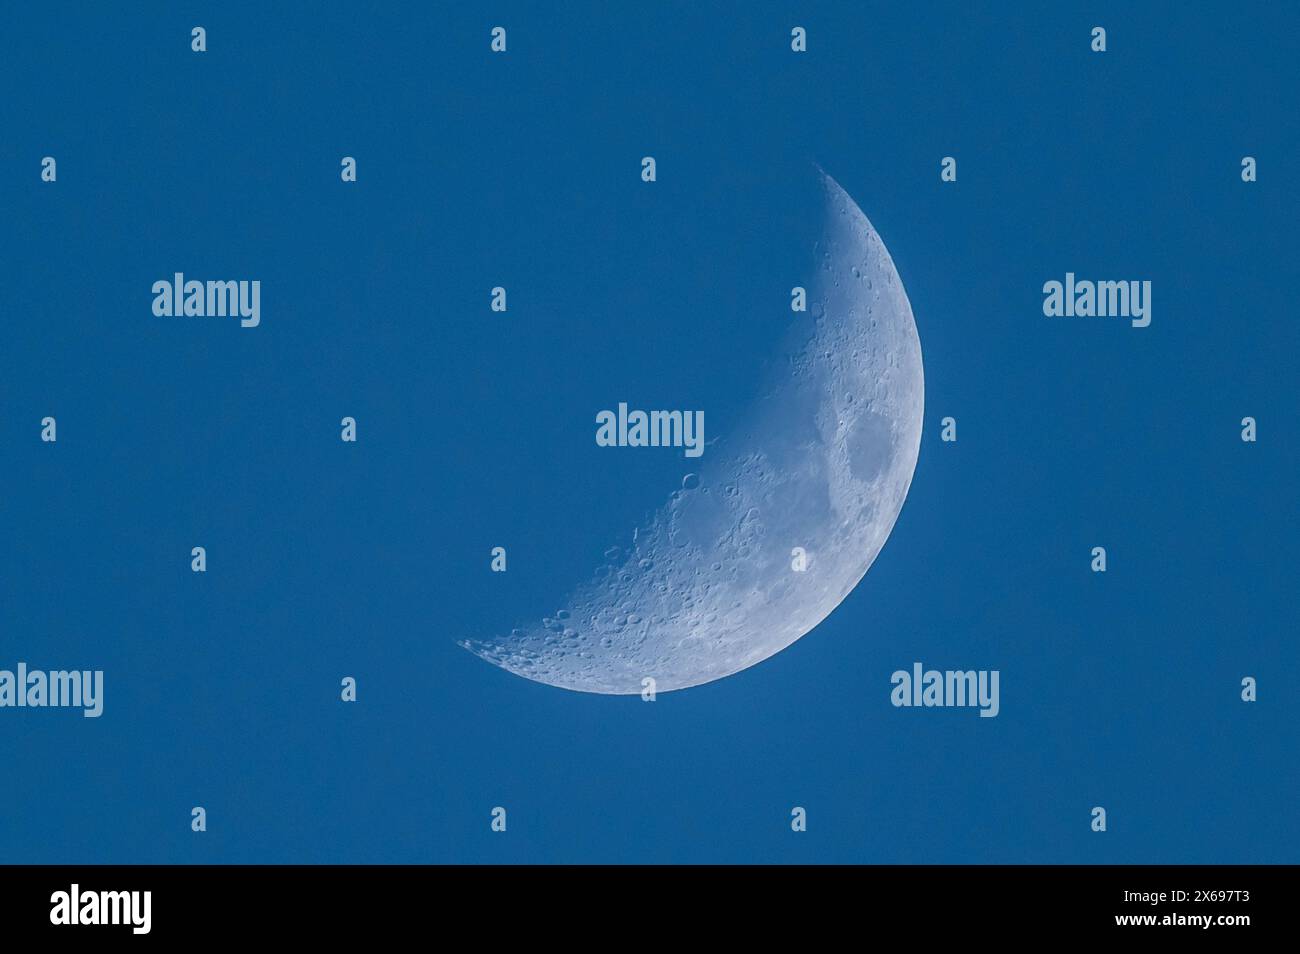 Der Mond ist bei blauem Himmel als Sichel zu sehen. Rottweil Baden-Württemberg Deutschland *** la luna può essere vista come una mezzaluna in un cielo blu Rottweil Baden Württemberg Germania Foto Stock